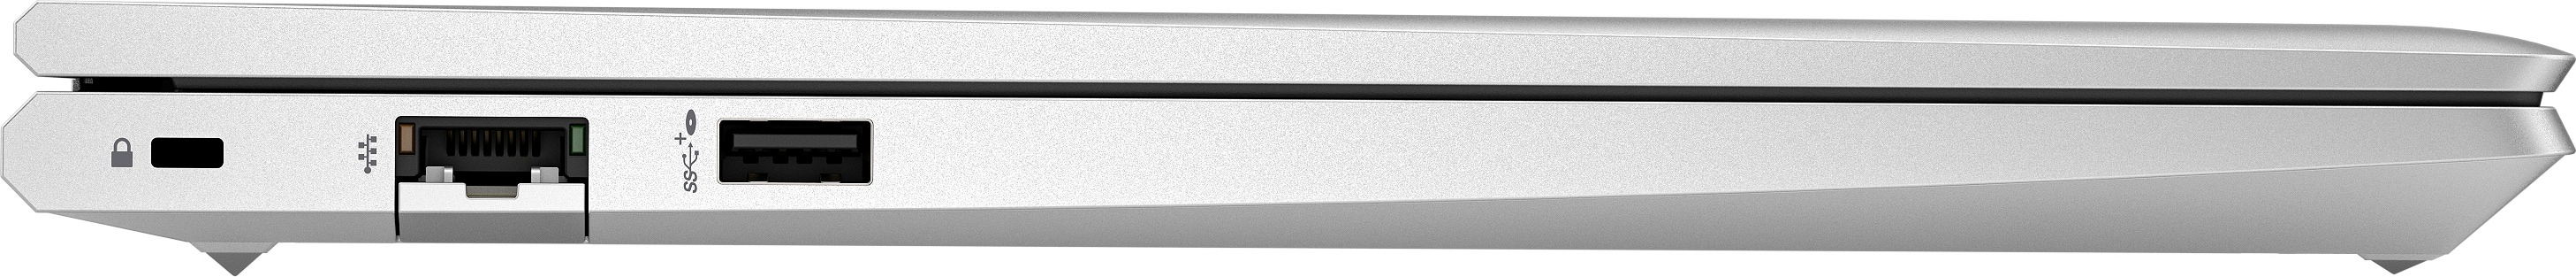 Ноутбук HP Probook 445-g10 (85c00ea)фото6